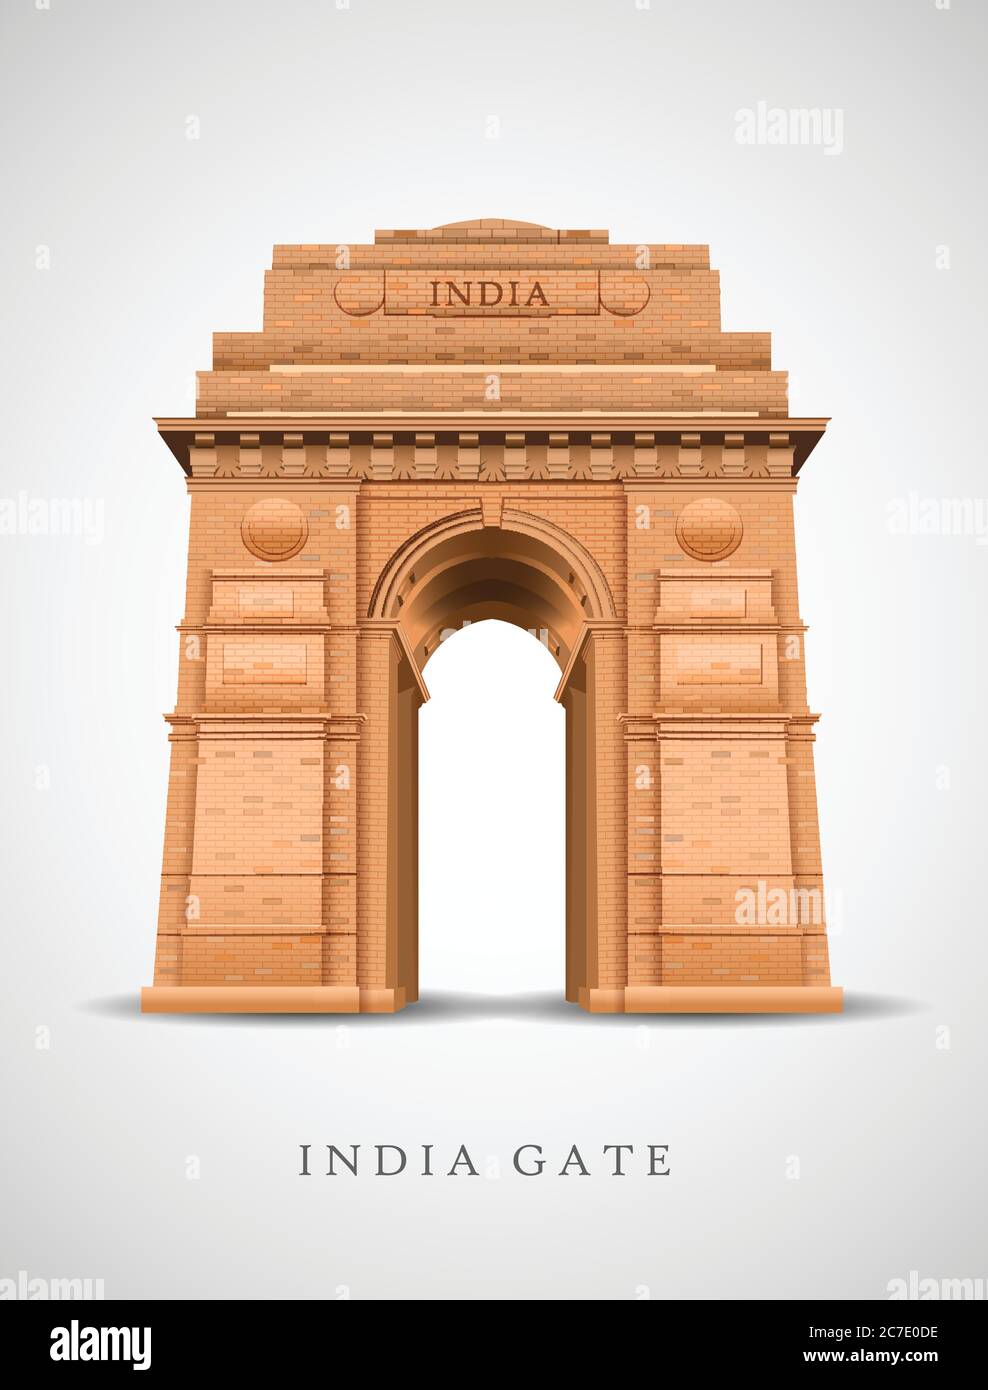 24 fotos e imágenes de India Gate Clip Art - Getty Images-saigonsouth.com.vn